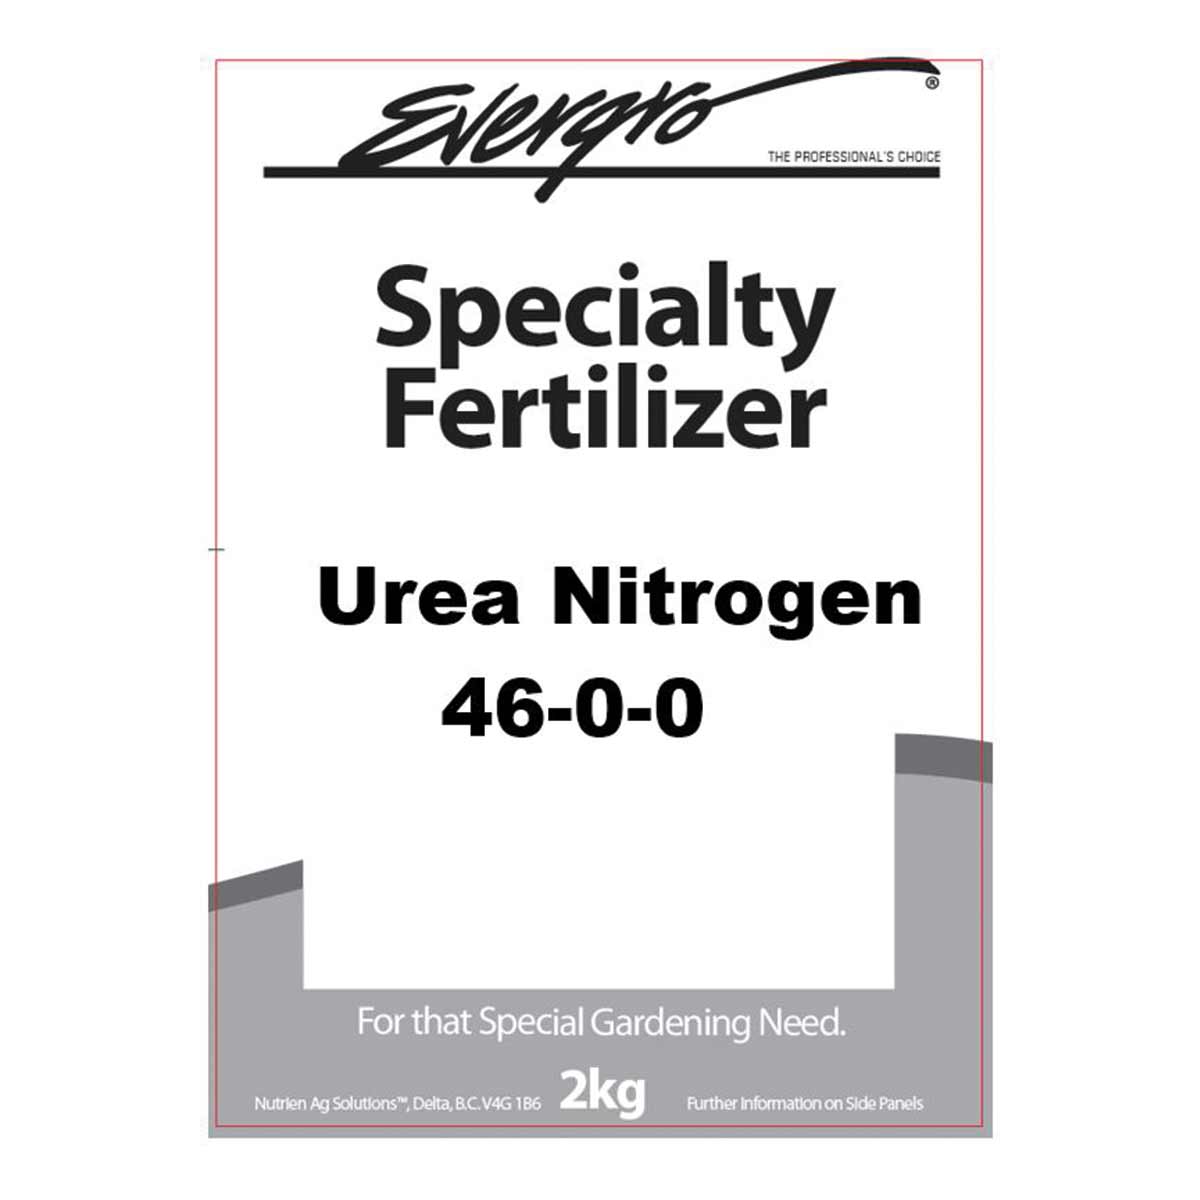 Evergro Urea Nitrogen (46-0-0) - 2kg